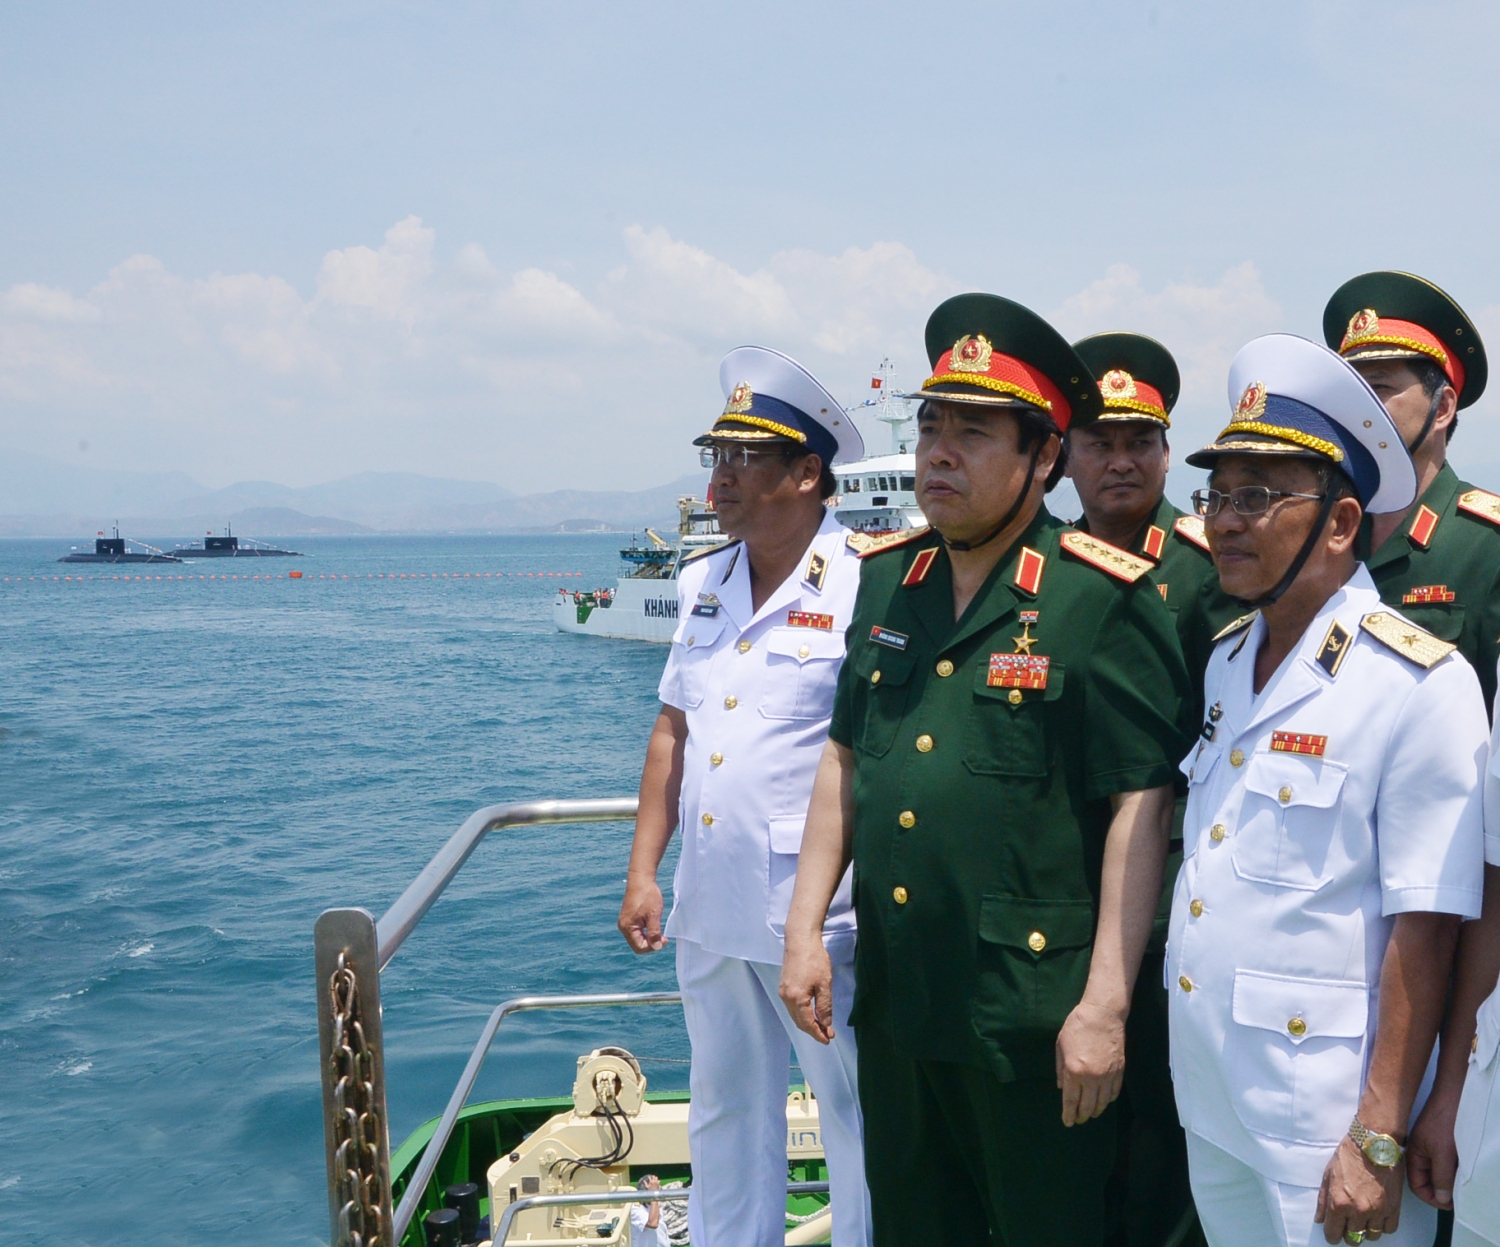 Đại tướng Phùng Quang Thanh luôn quan tâm đến biển, đảo và dành tình cảm đặc biệt đối với bộ đội Hải quân